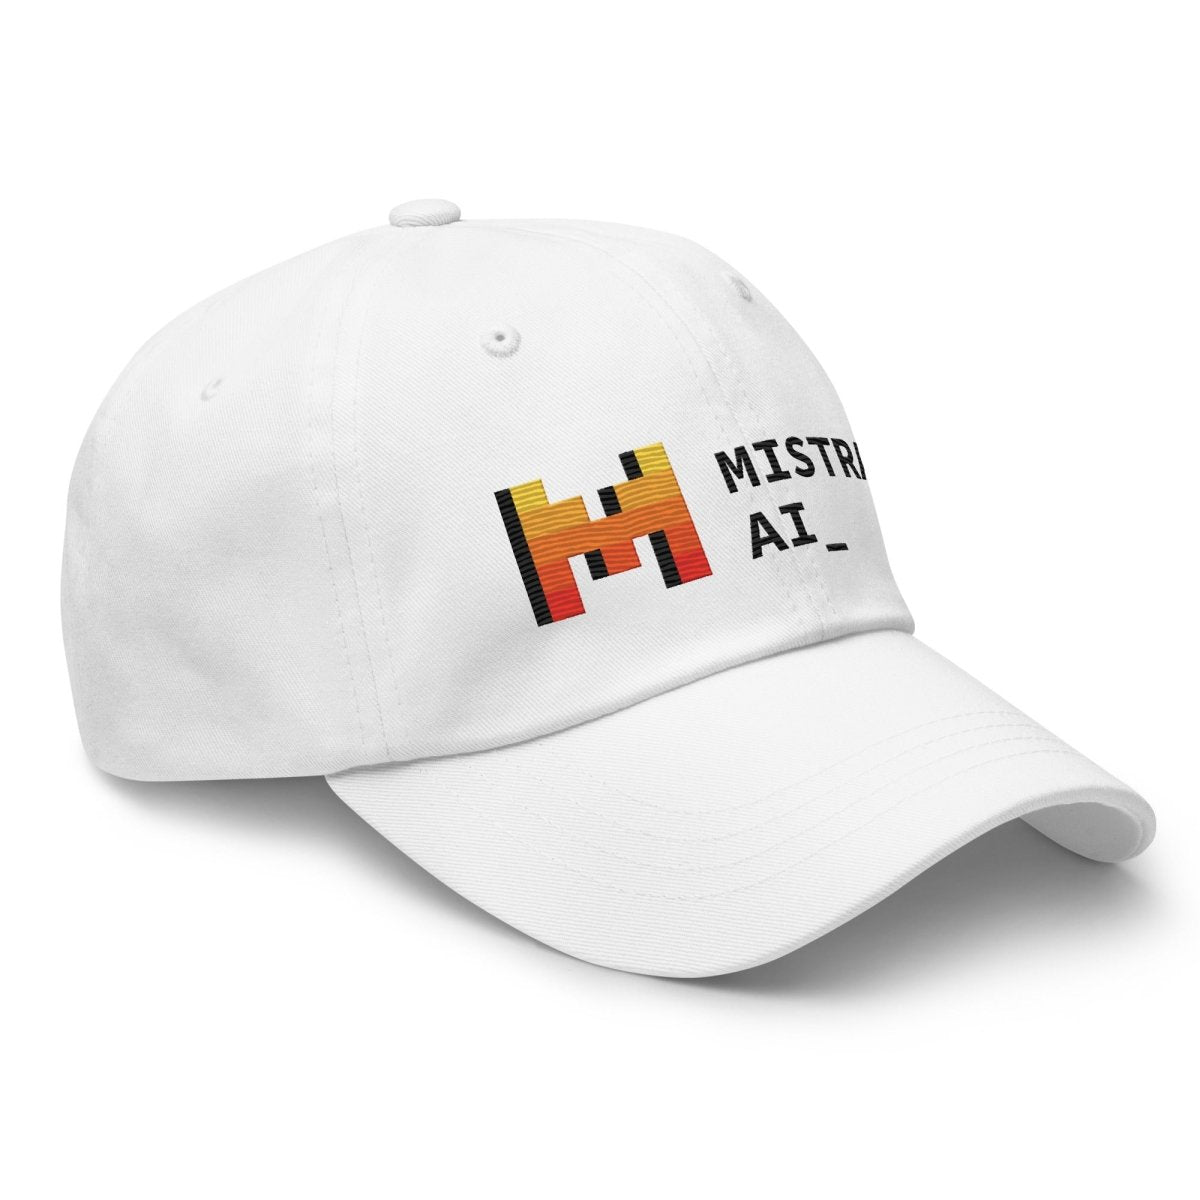 Mistral AI Logo True - Color Embroidered Cap - White - AI Store